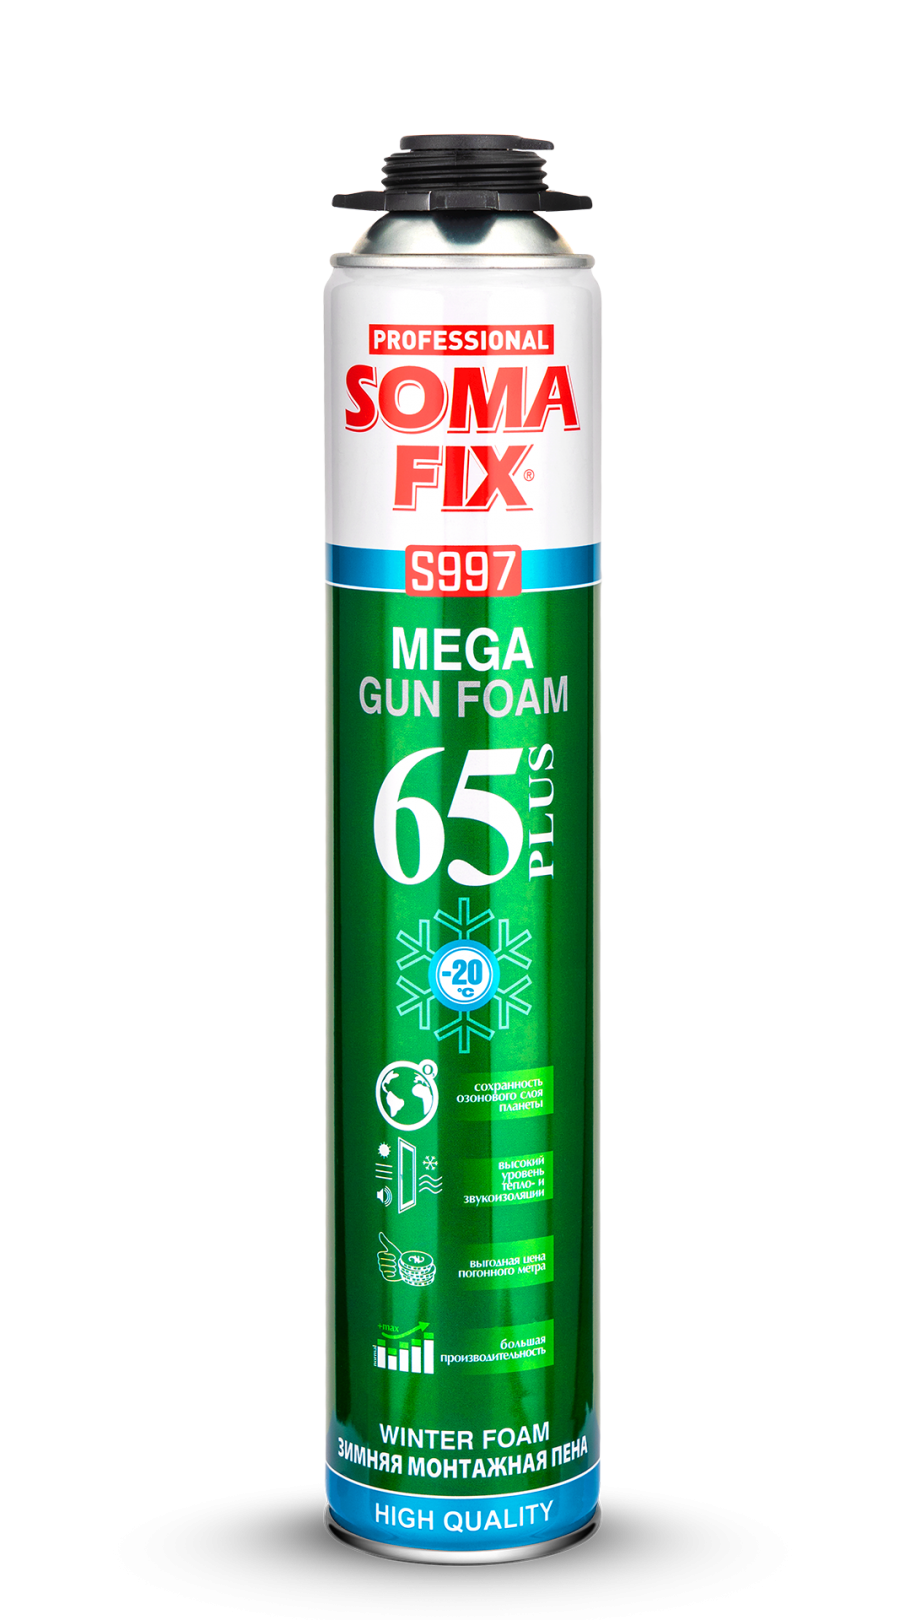 Somafix Mega Plus Tabancalı Kışlık Poliüretan Köpük S997